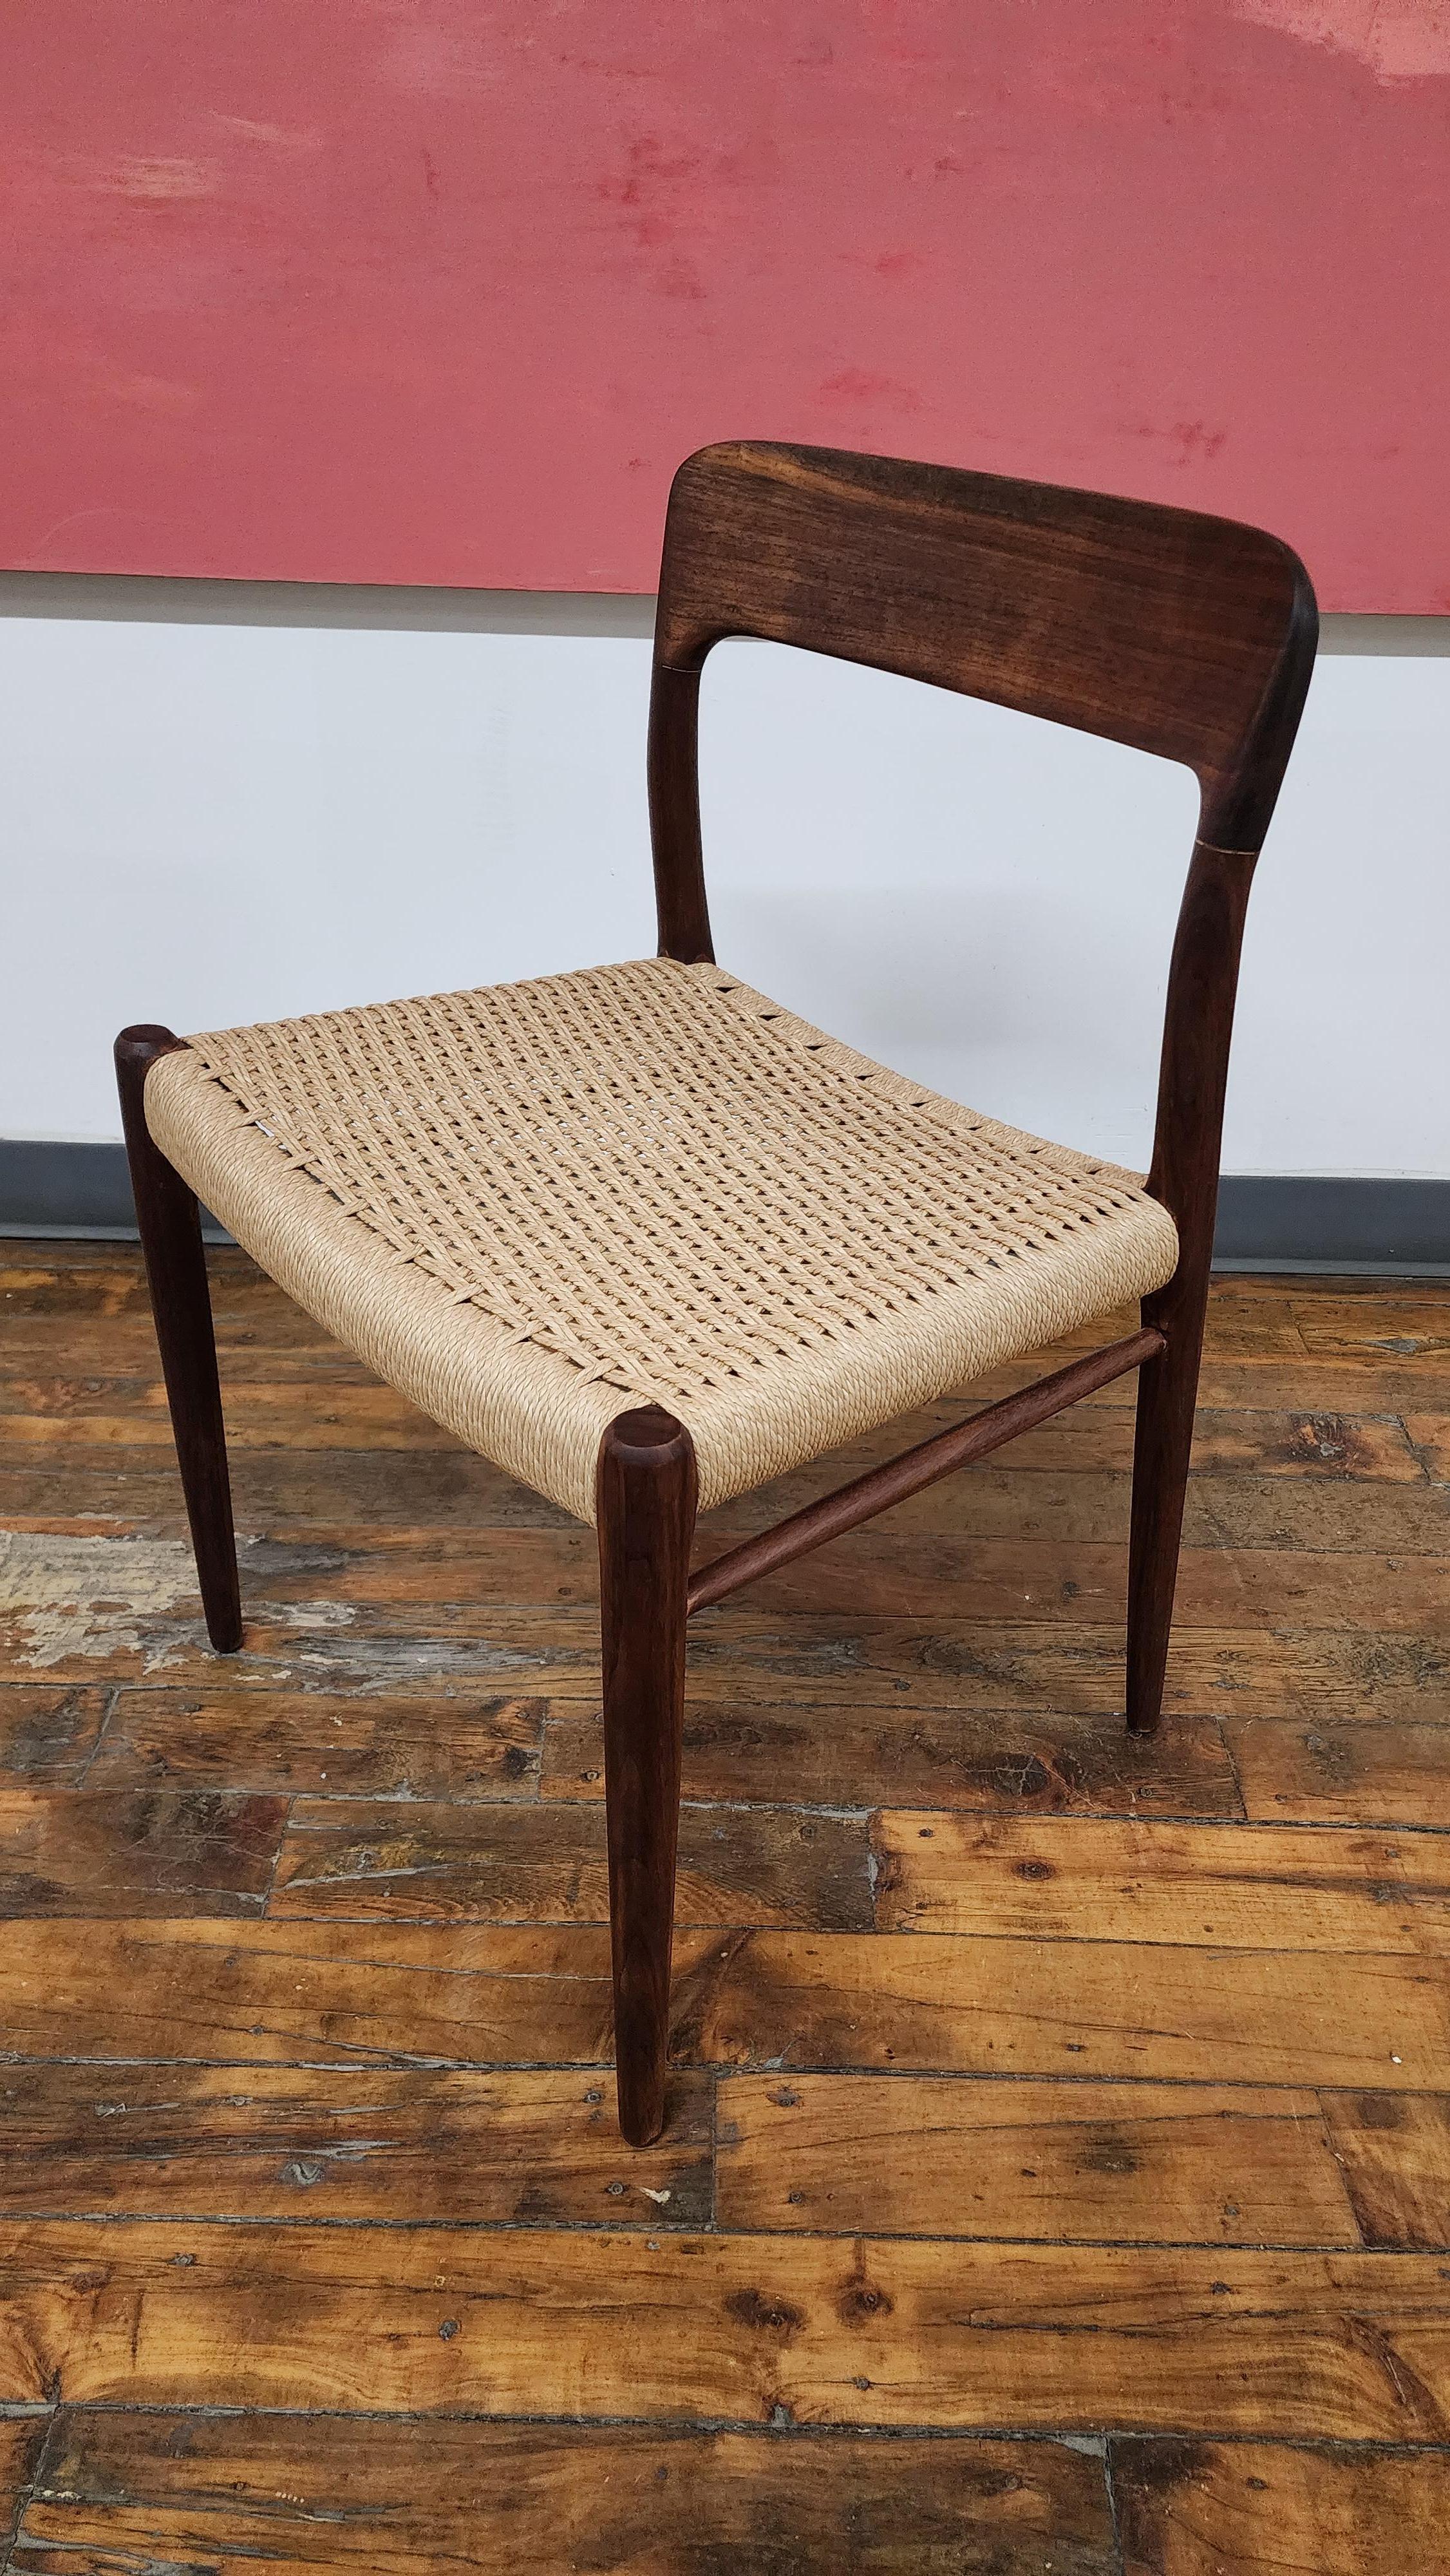 Schöner Beistellstuhl aus dänischem Nussbaum von Niels Moller für J.L. Moller. Dieser Stuhl wurde professionell aufgearbeitet und hat einen neuen Sitz aus dänischem Papier. Dieser Stuhl eignet sich als einzelner Beistellstuhl, Schreibtischstuhl oder